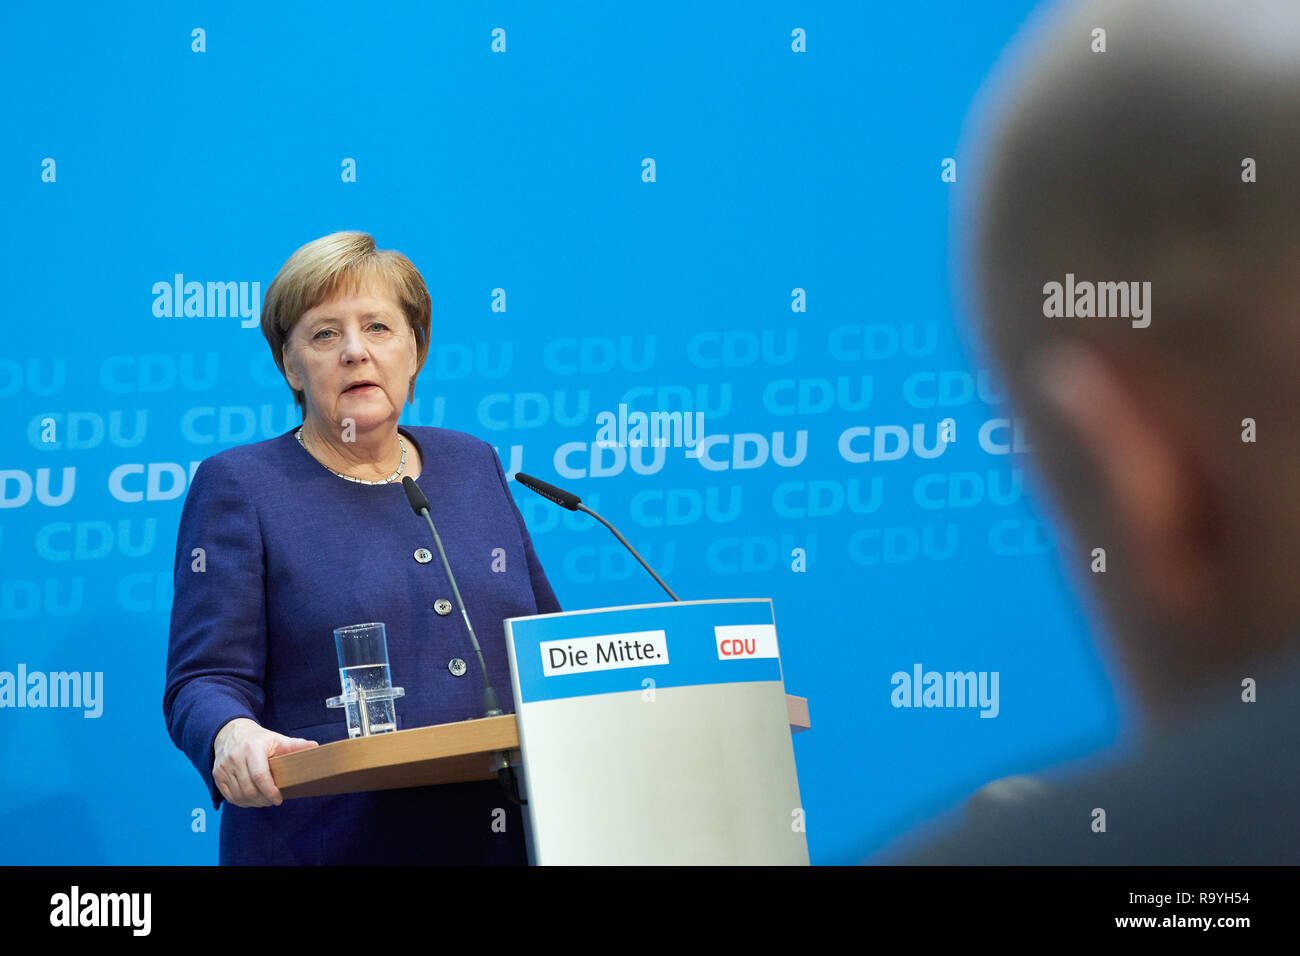 05.11.2018, Berlin, Deutschland - Angela Merkel - Vorsitzende der CDU Deutschlands bei einer Pressekonferenz. 00R181105D152CARO.JPG [MODEL RELEASE: NO Stock Photo